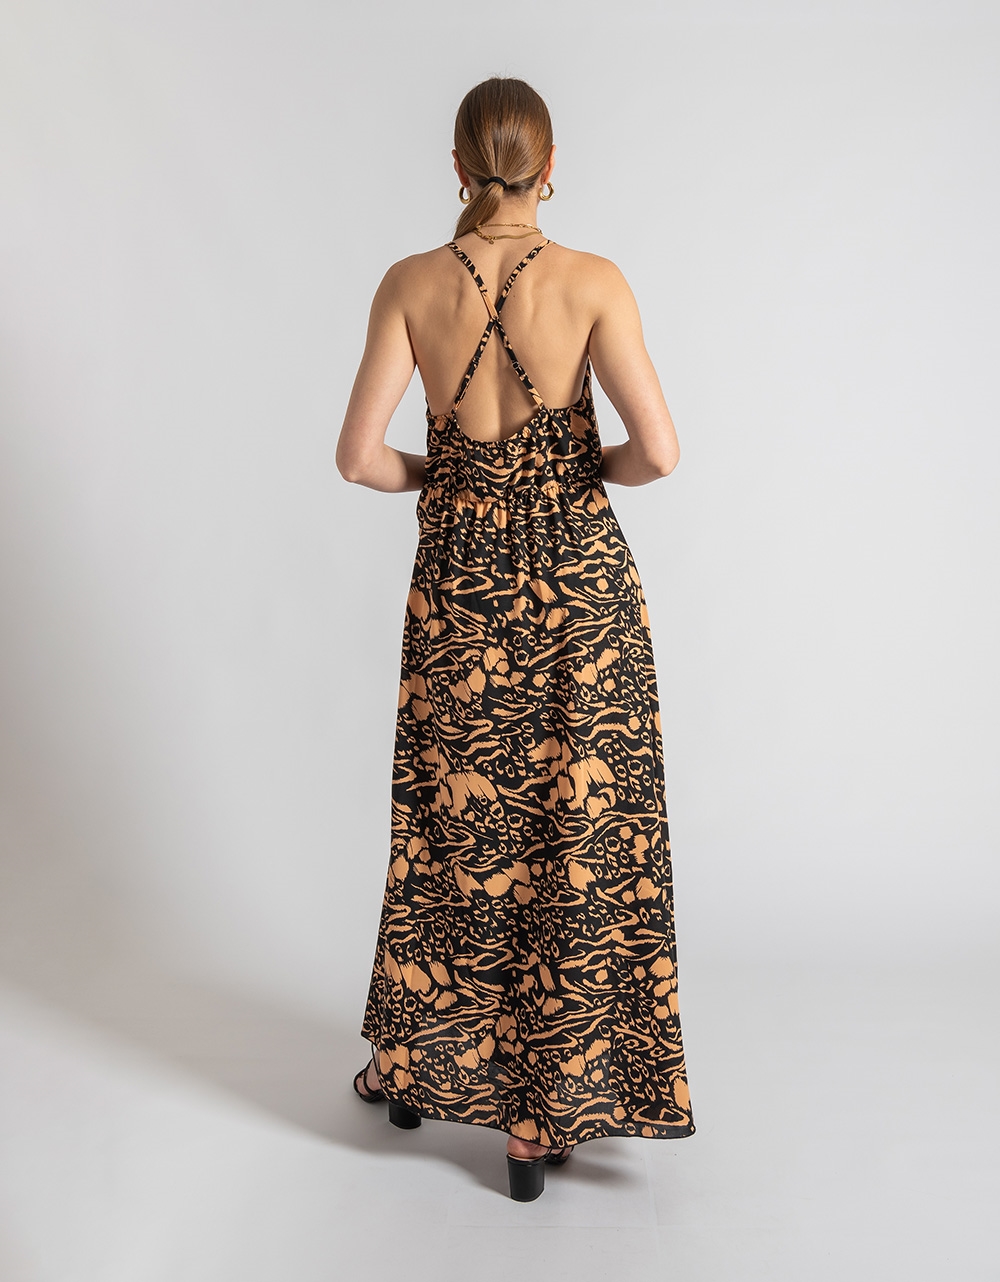 Εικόνα από Maxi φόρεμα με χιαστί σχέδιο στην πλάτη Κάμελ